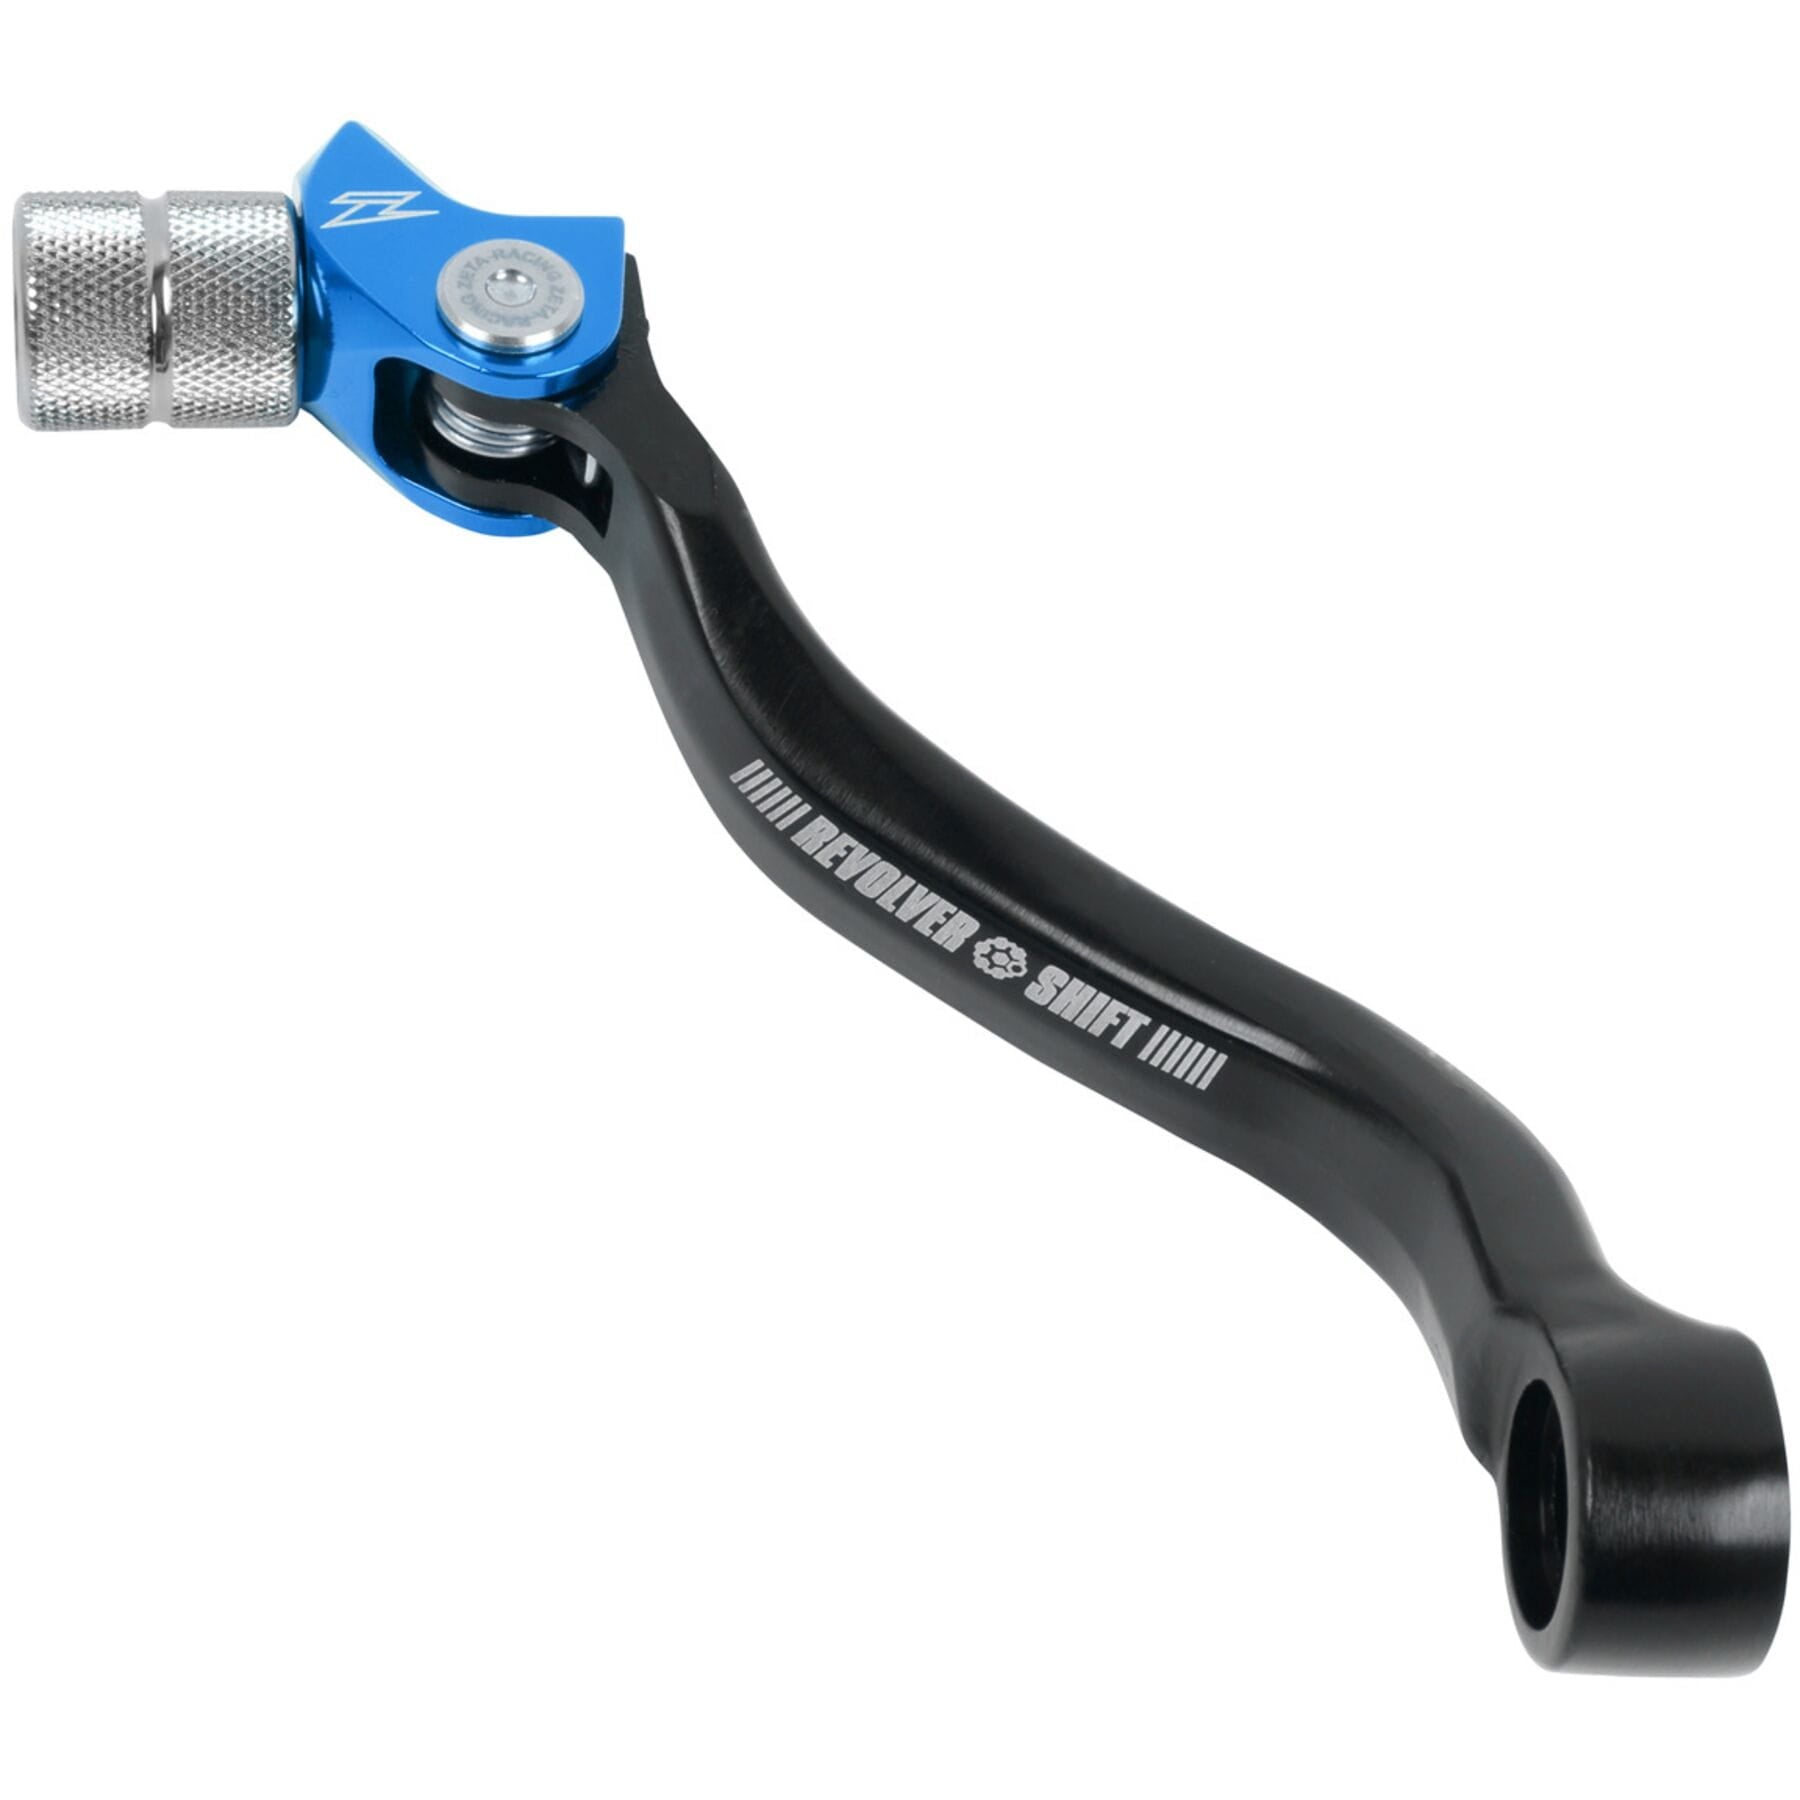 Blue Revolver adjustable shift lever for YZF250/450 2014-2022 models